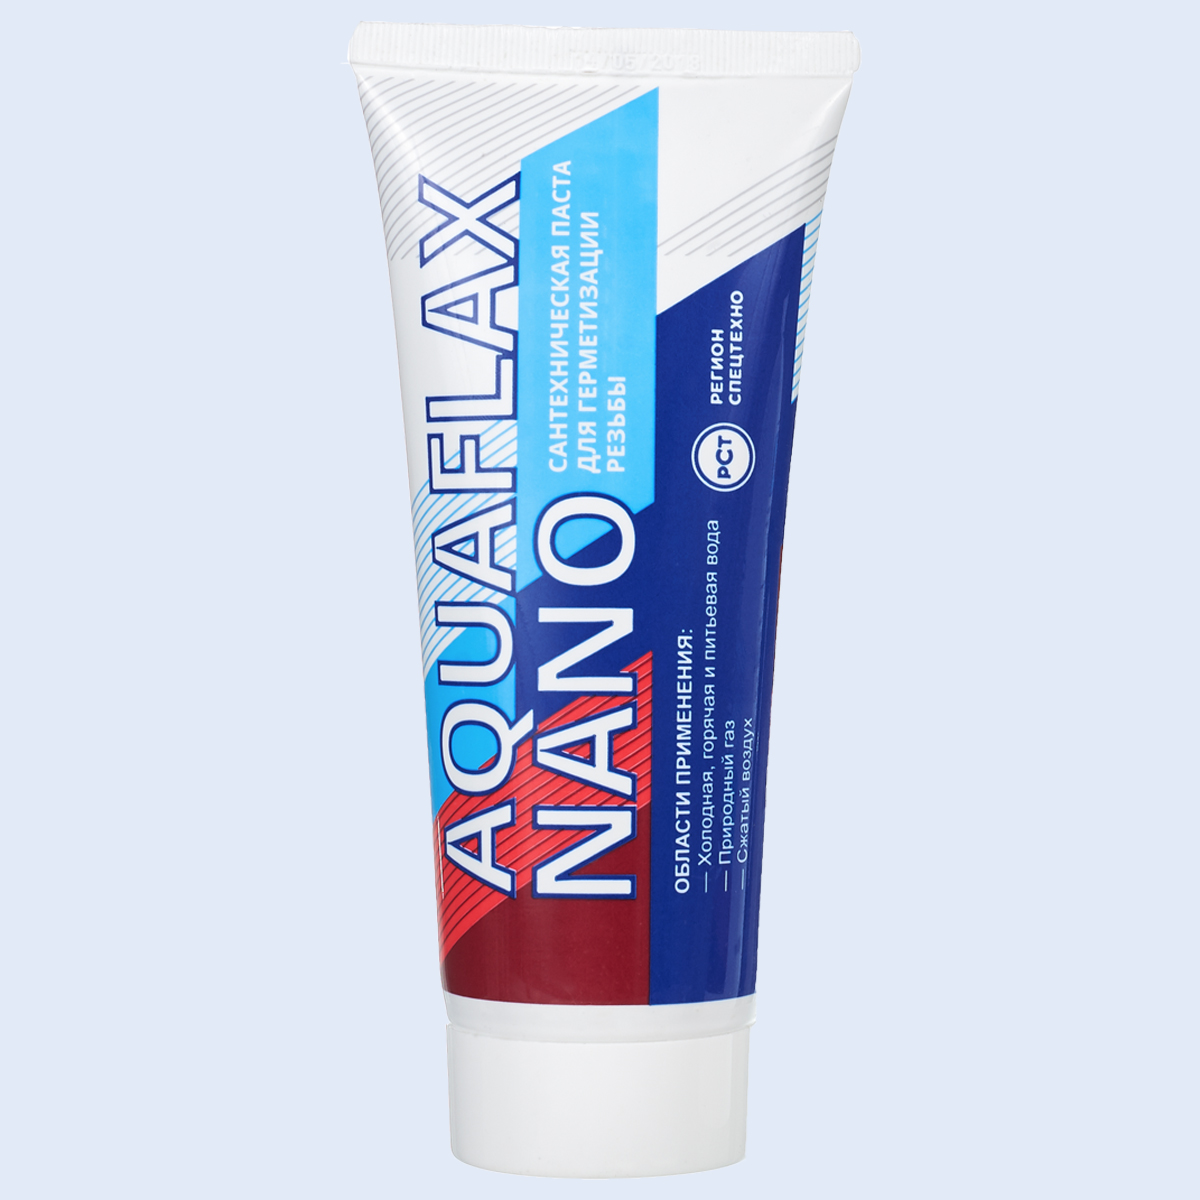 Aquaflax nano, тюбик 270 гр.